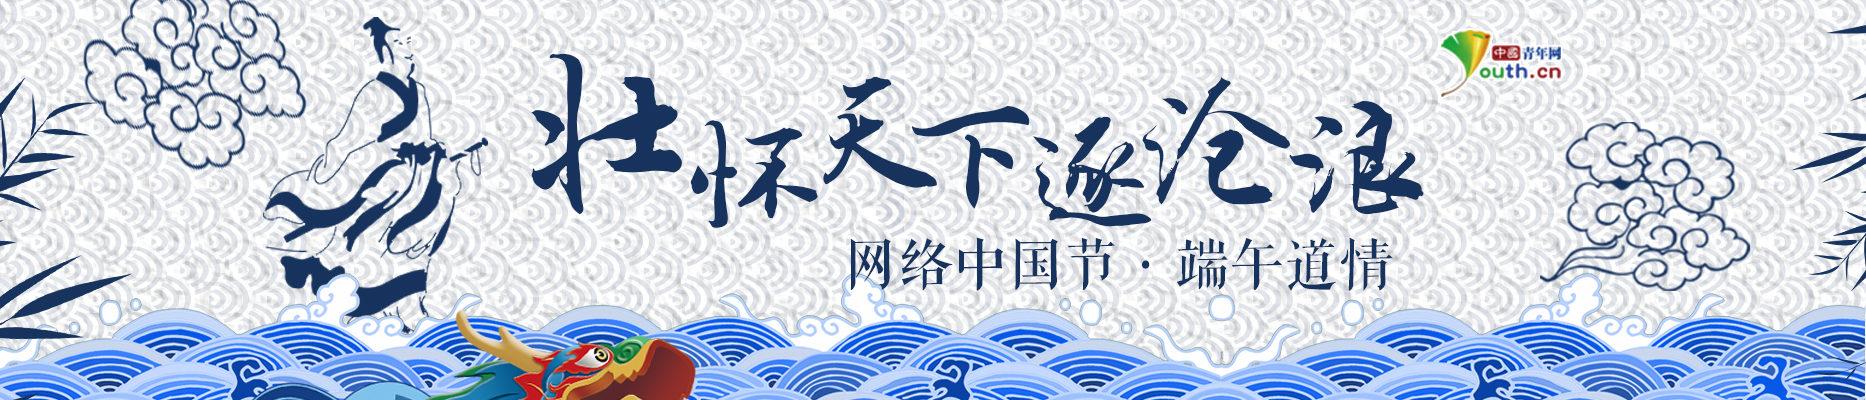 【banner】网络中国节-端午.jpg